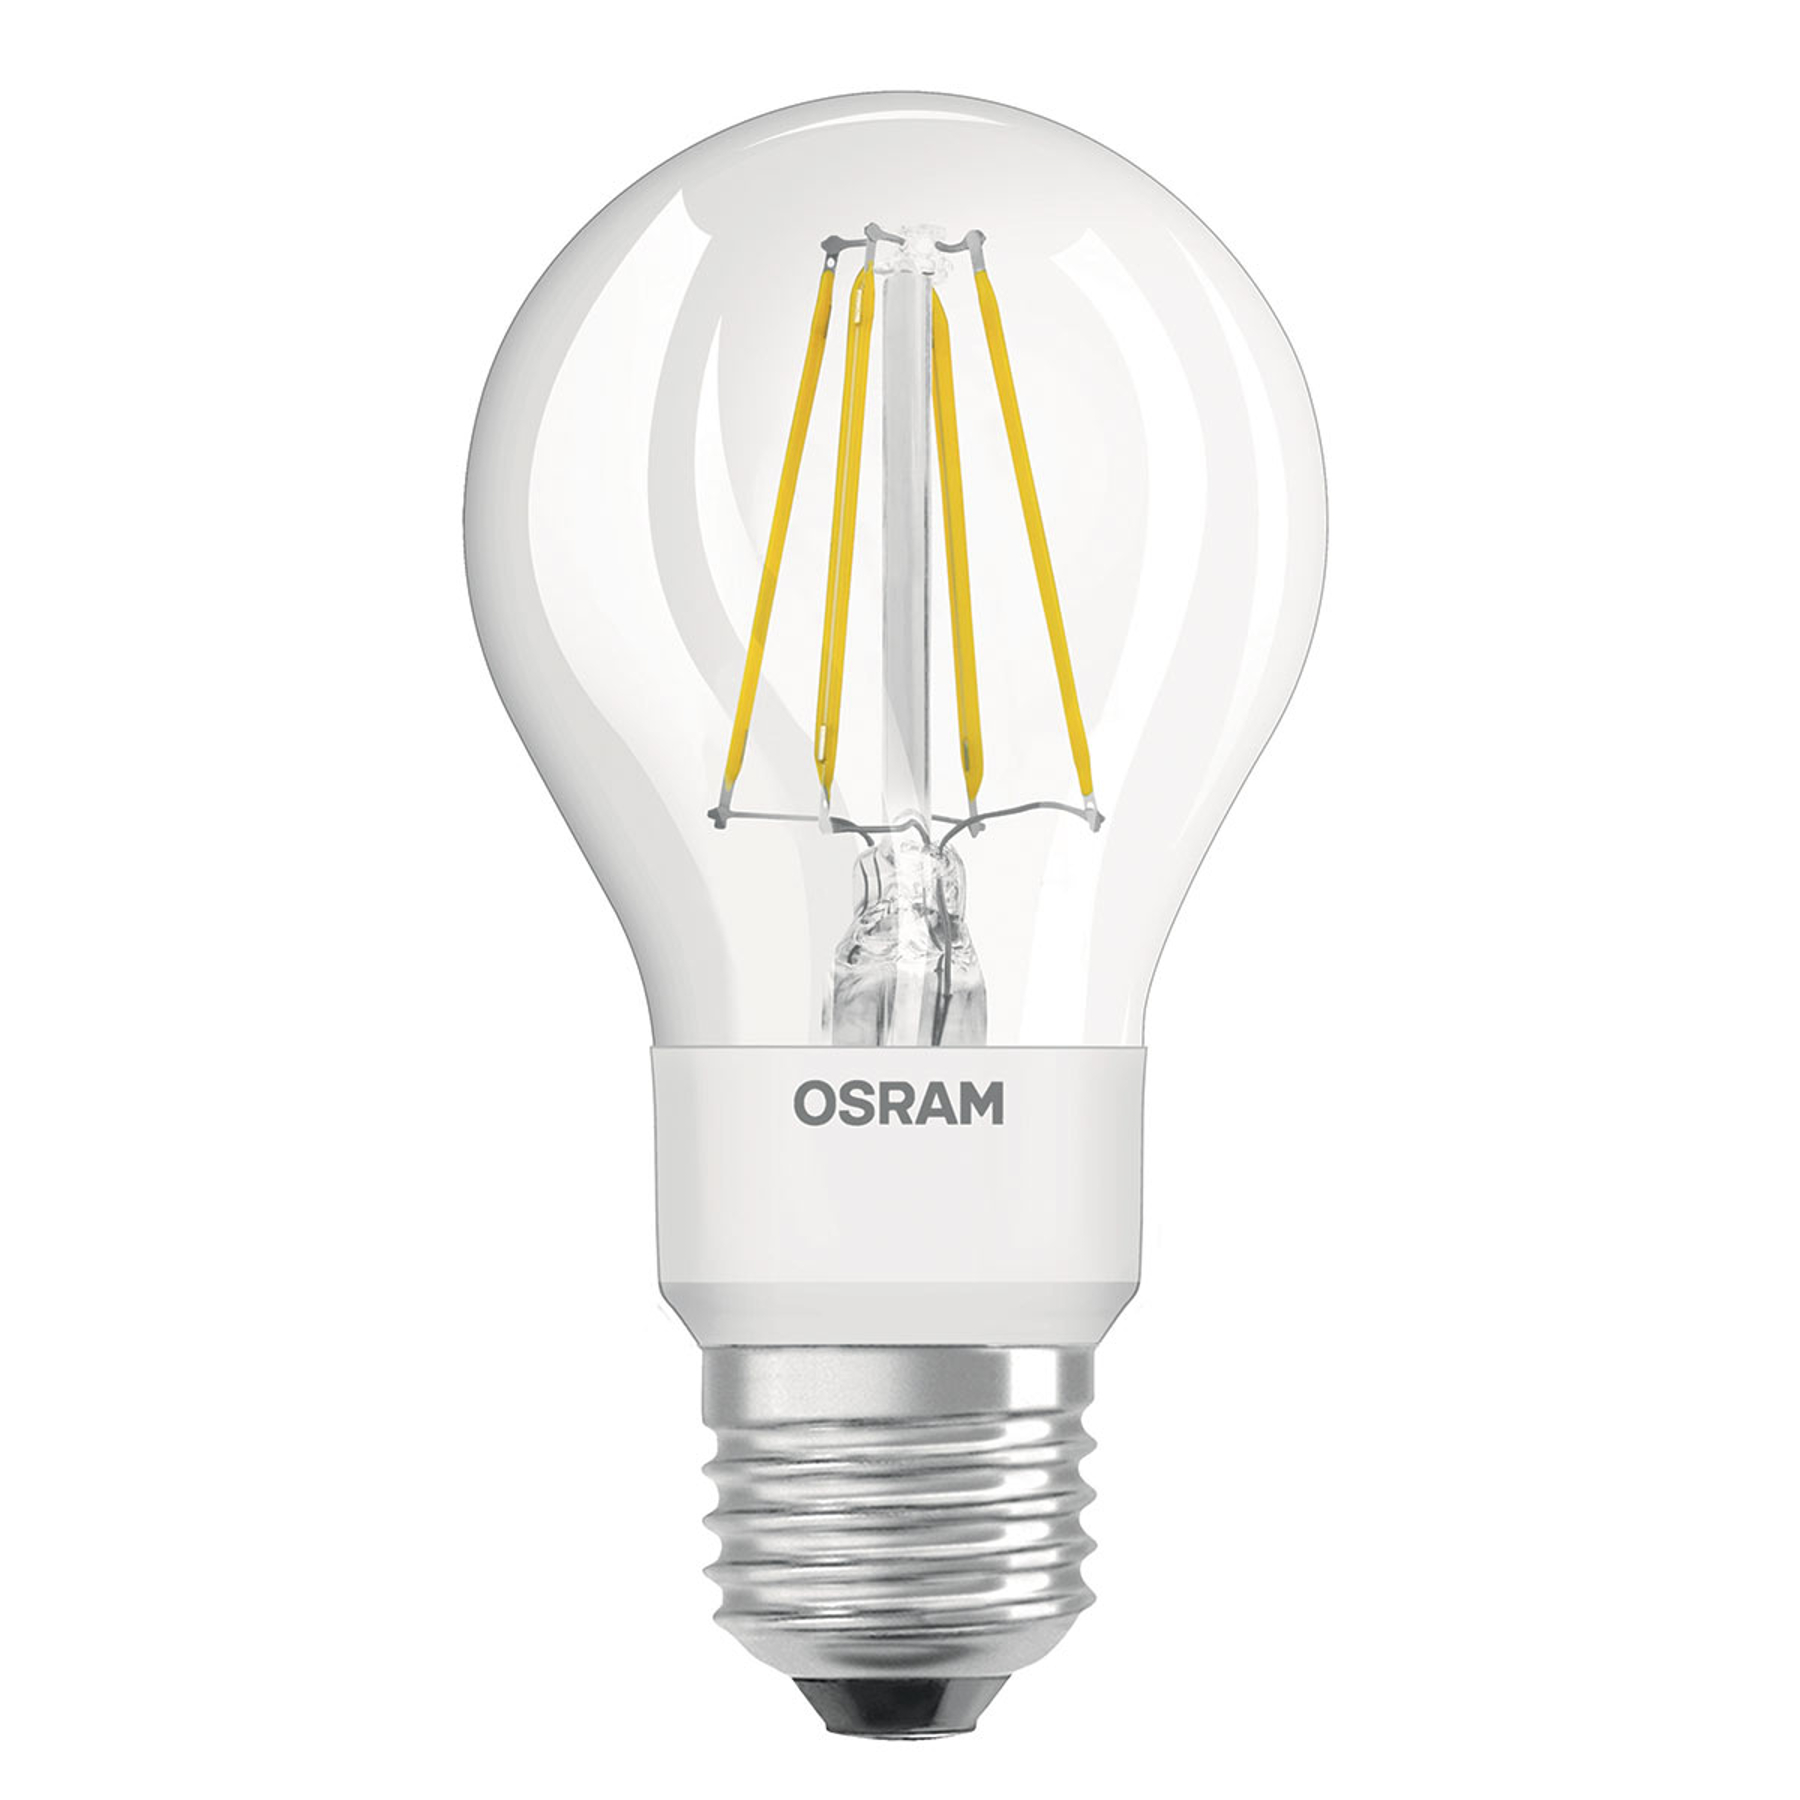 OSRAM-LED-lamppu 4,5W Star+GLOWdim Filament kirkas